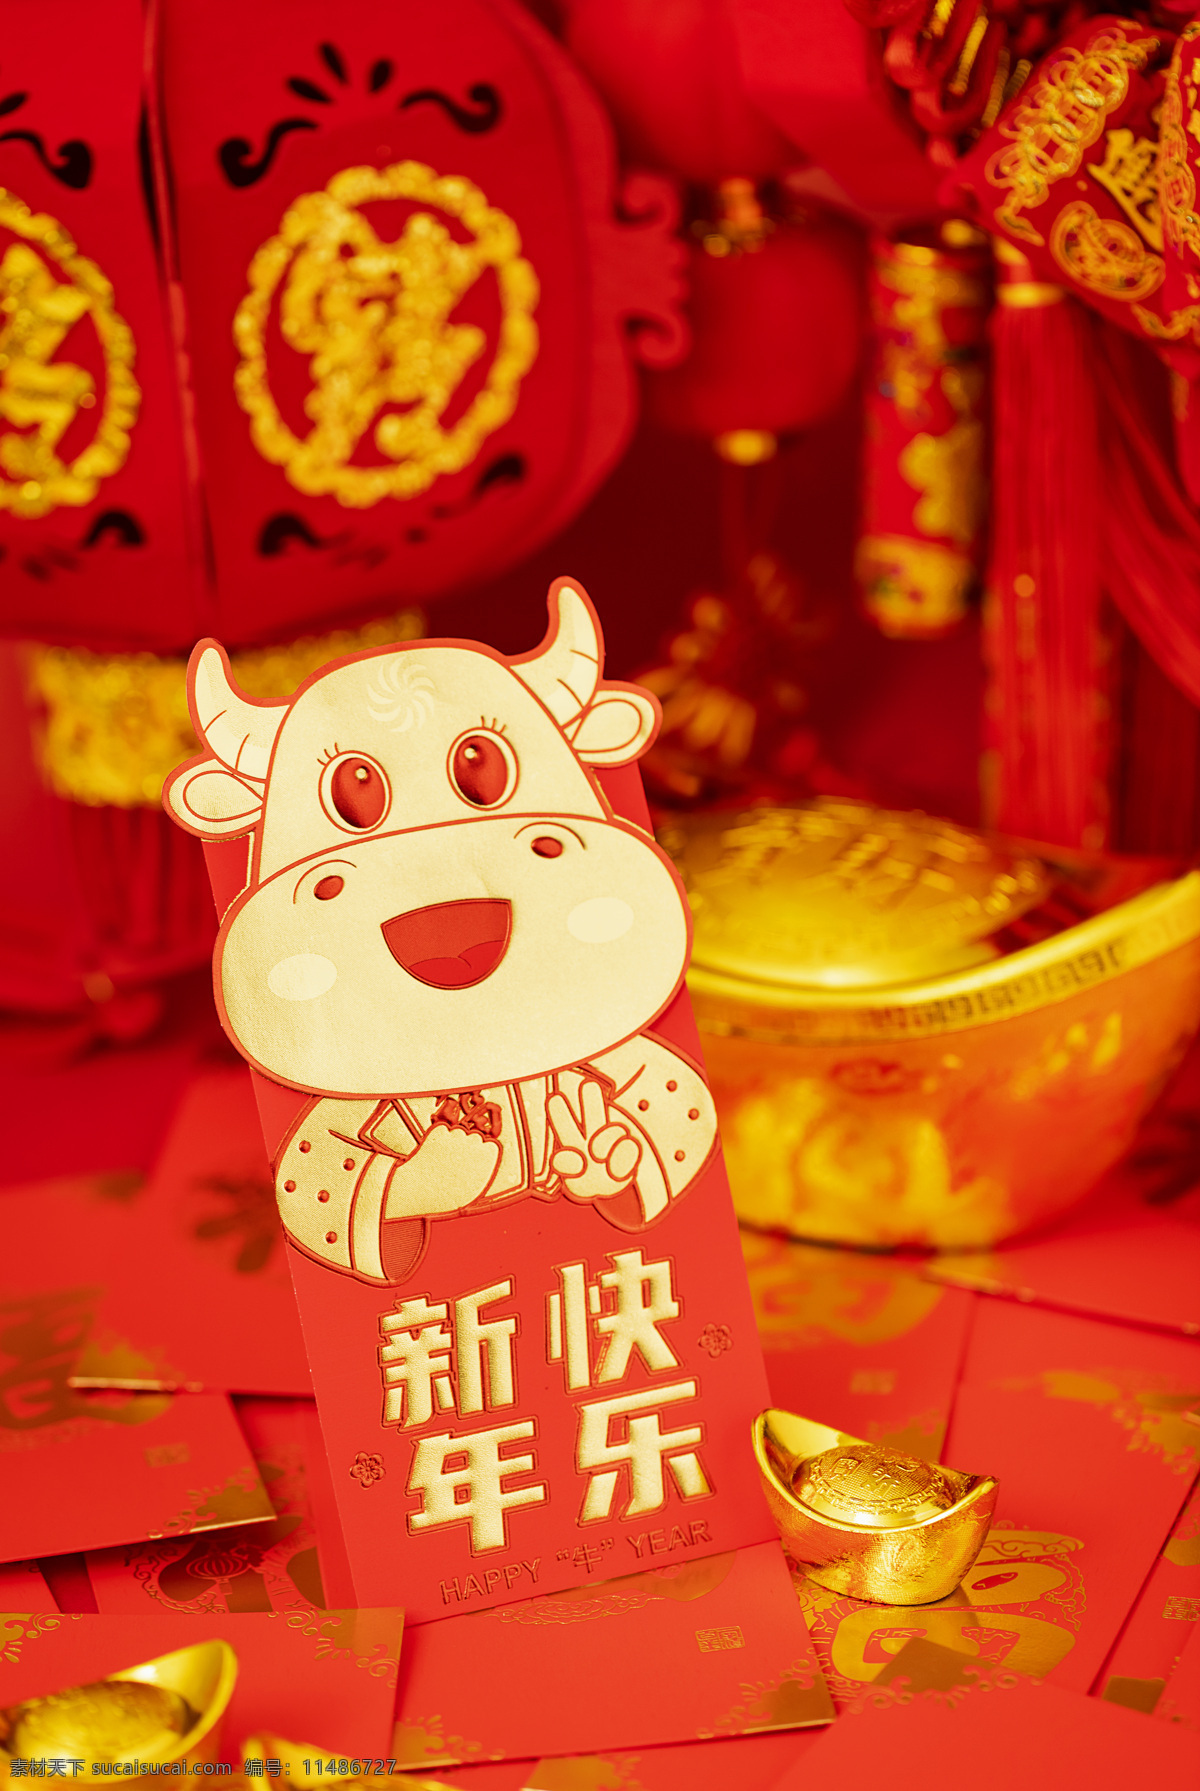 春节图片 新年 春节 2021 牛年 红包 灯笼 喜庆 红色 吉祥 平安 万事如意 瓜子 年货 小牛 文化艺术 传统文化